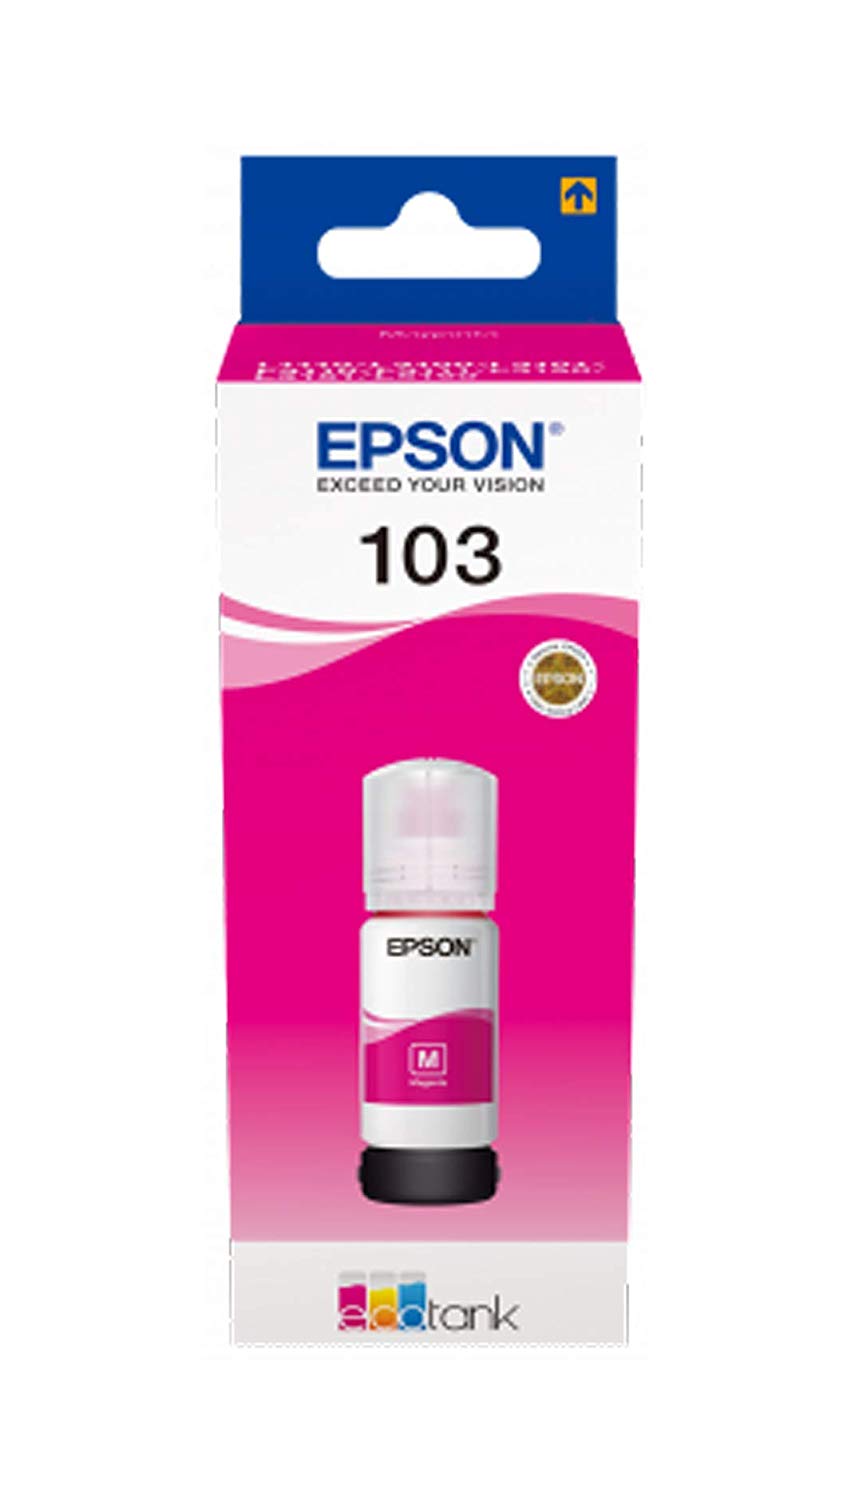 EPSON EcoTank Refill Ink  103 for  L1110 L3100 L3110 L3150 L5190